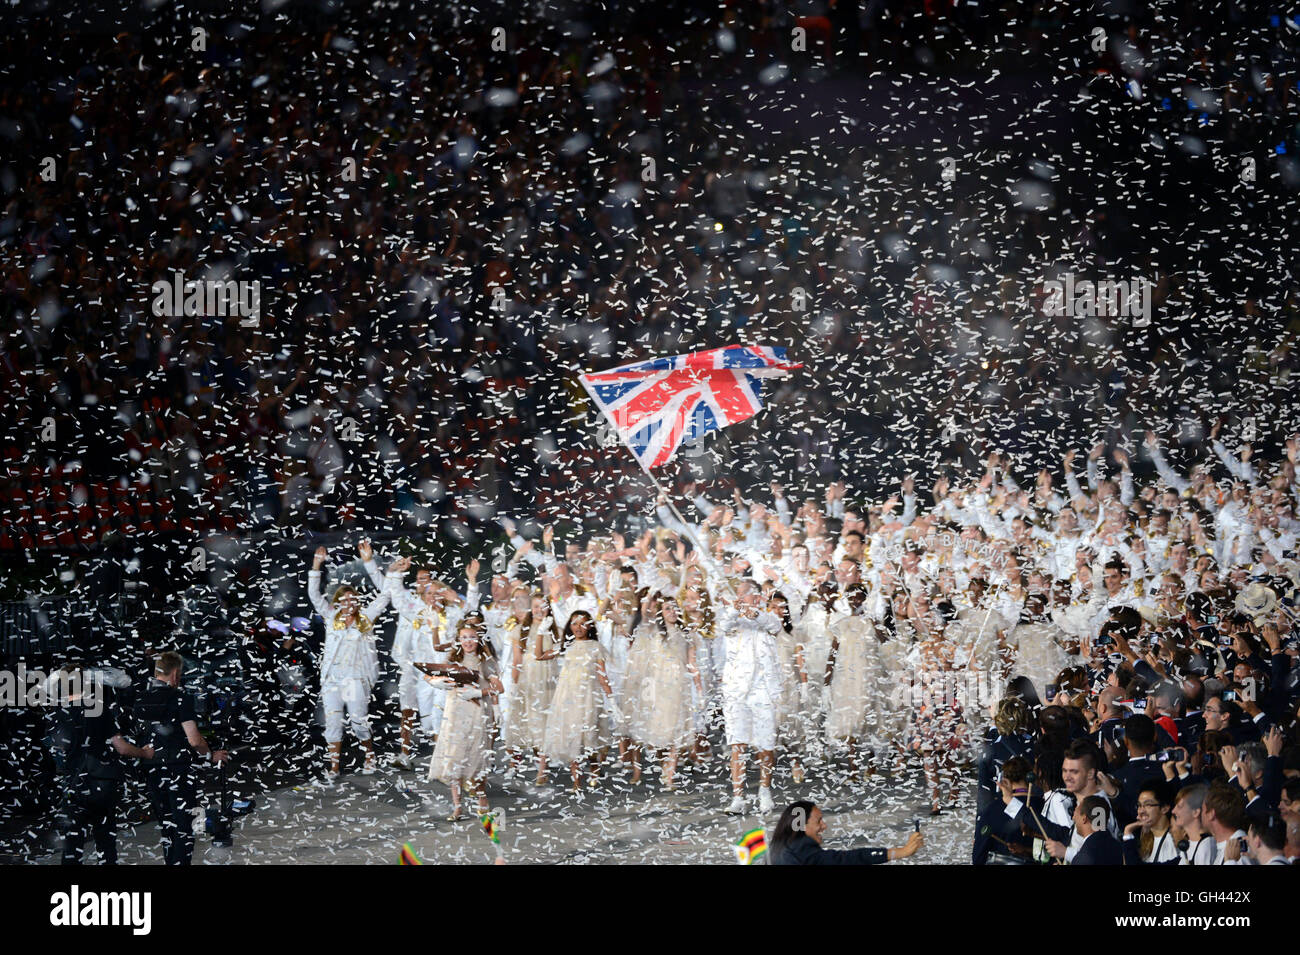 Gran Bretagna team entrare allo stadio Olimpico durante la cerimonia di apertura delle olimpiadi di Londra. Foto Stock